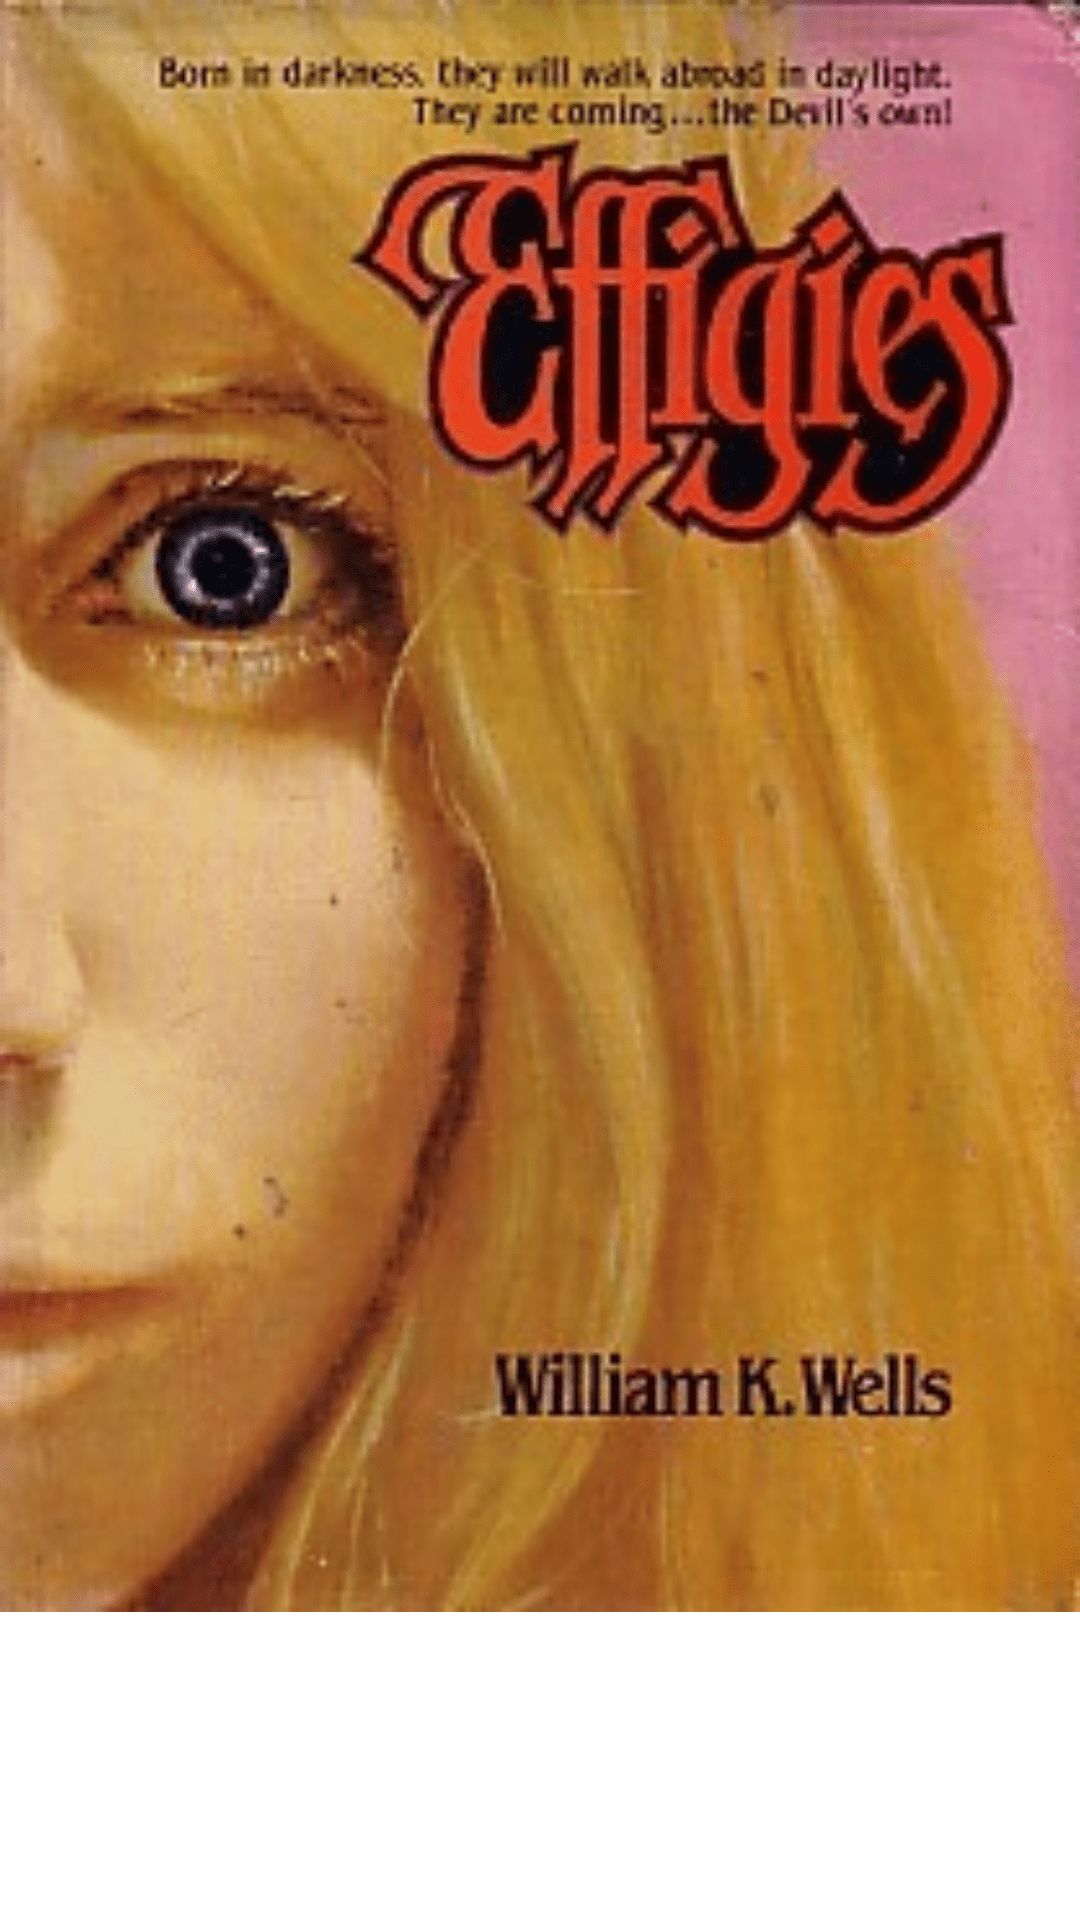 Effigies by William K. Wells